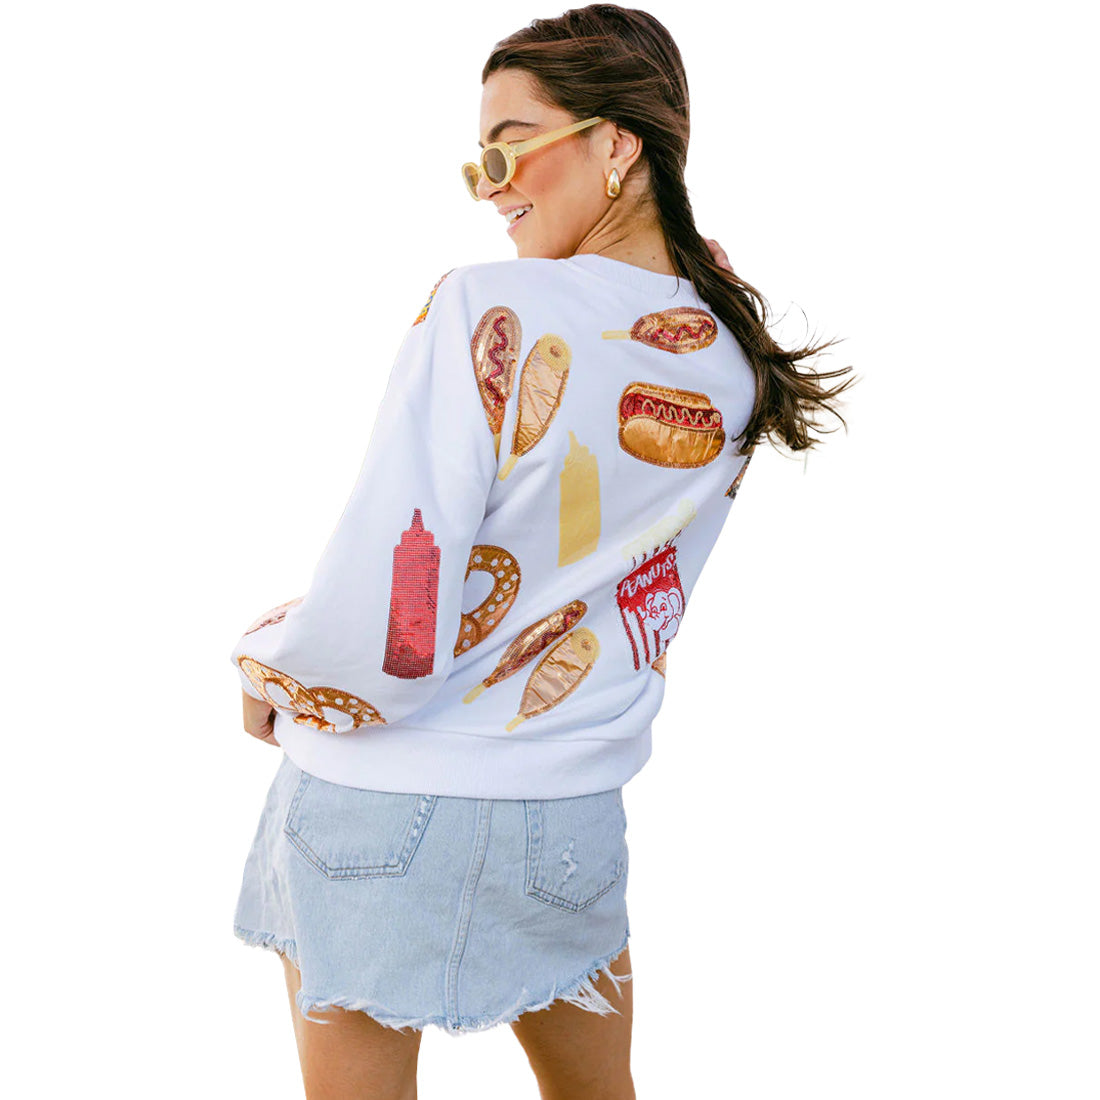 Queen of Sparkles Scattered Ballpark Food Sweatshirt - Women's